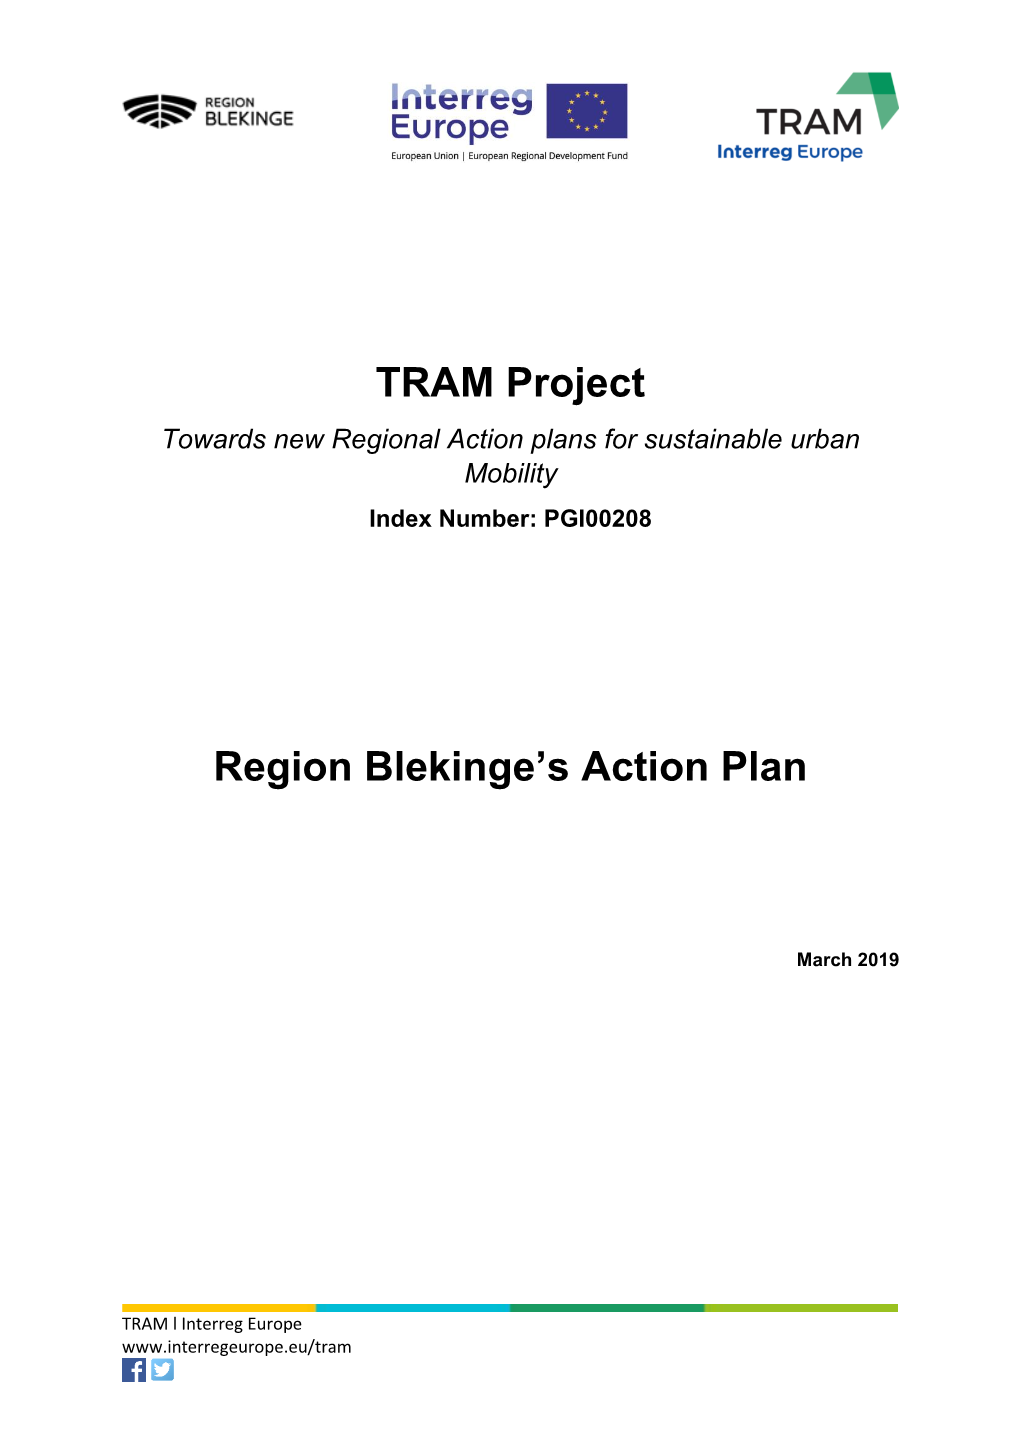 Region Blekinge's Action Plan